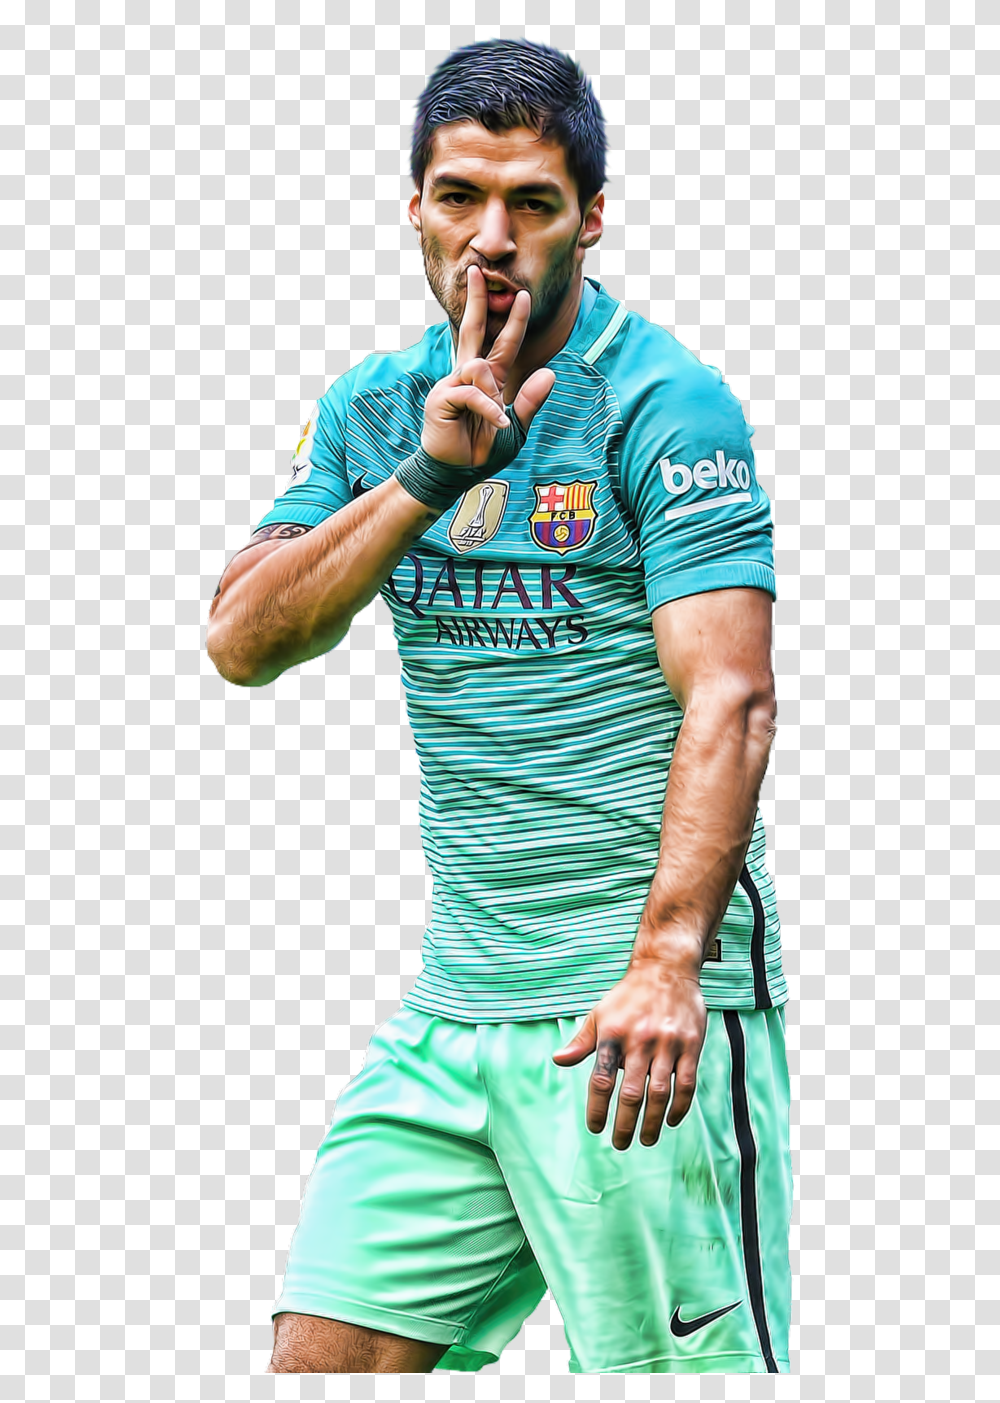 Luis Suarez Football Clipart Suarez Clipart, Person, T-Shirt, Man Transparent Png